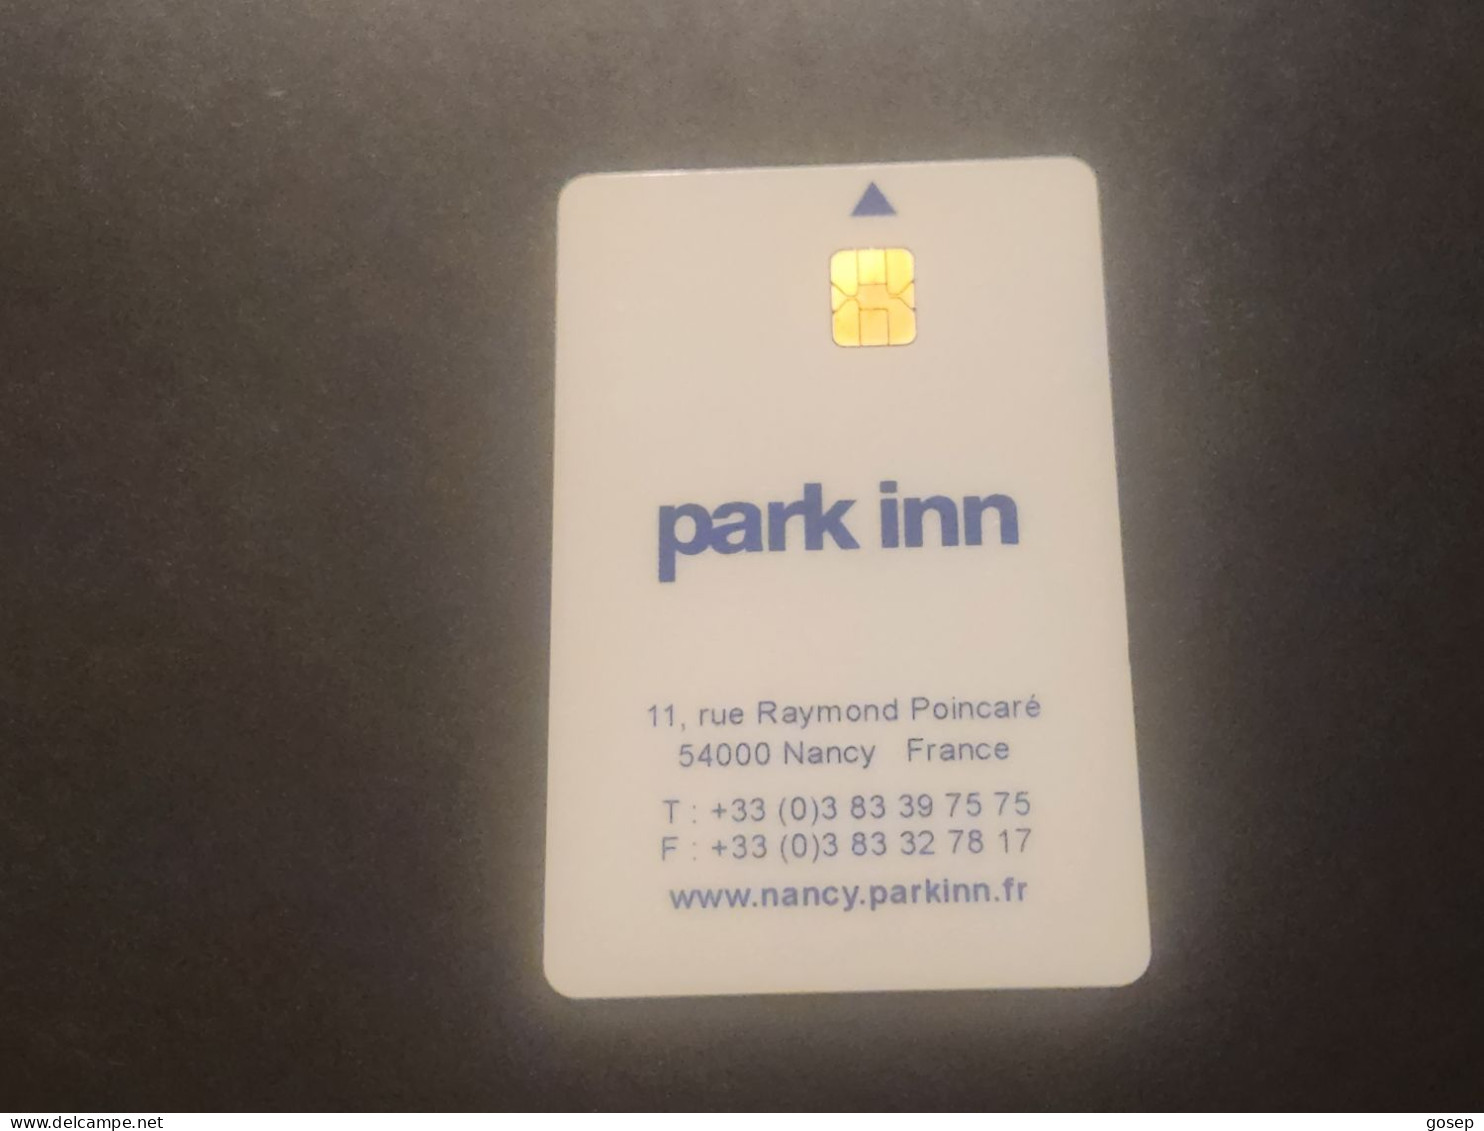 FRANCE-PARK INN-HOTAL KEY-(1050)(CHIP)GOOD CARD - Cartes D'hotel